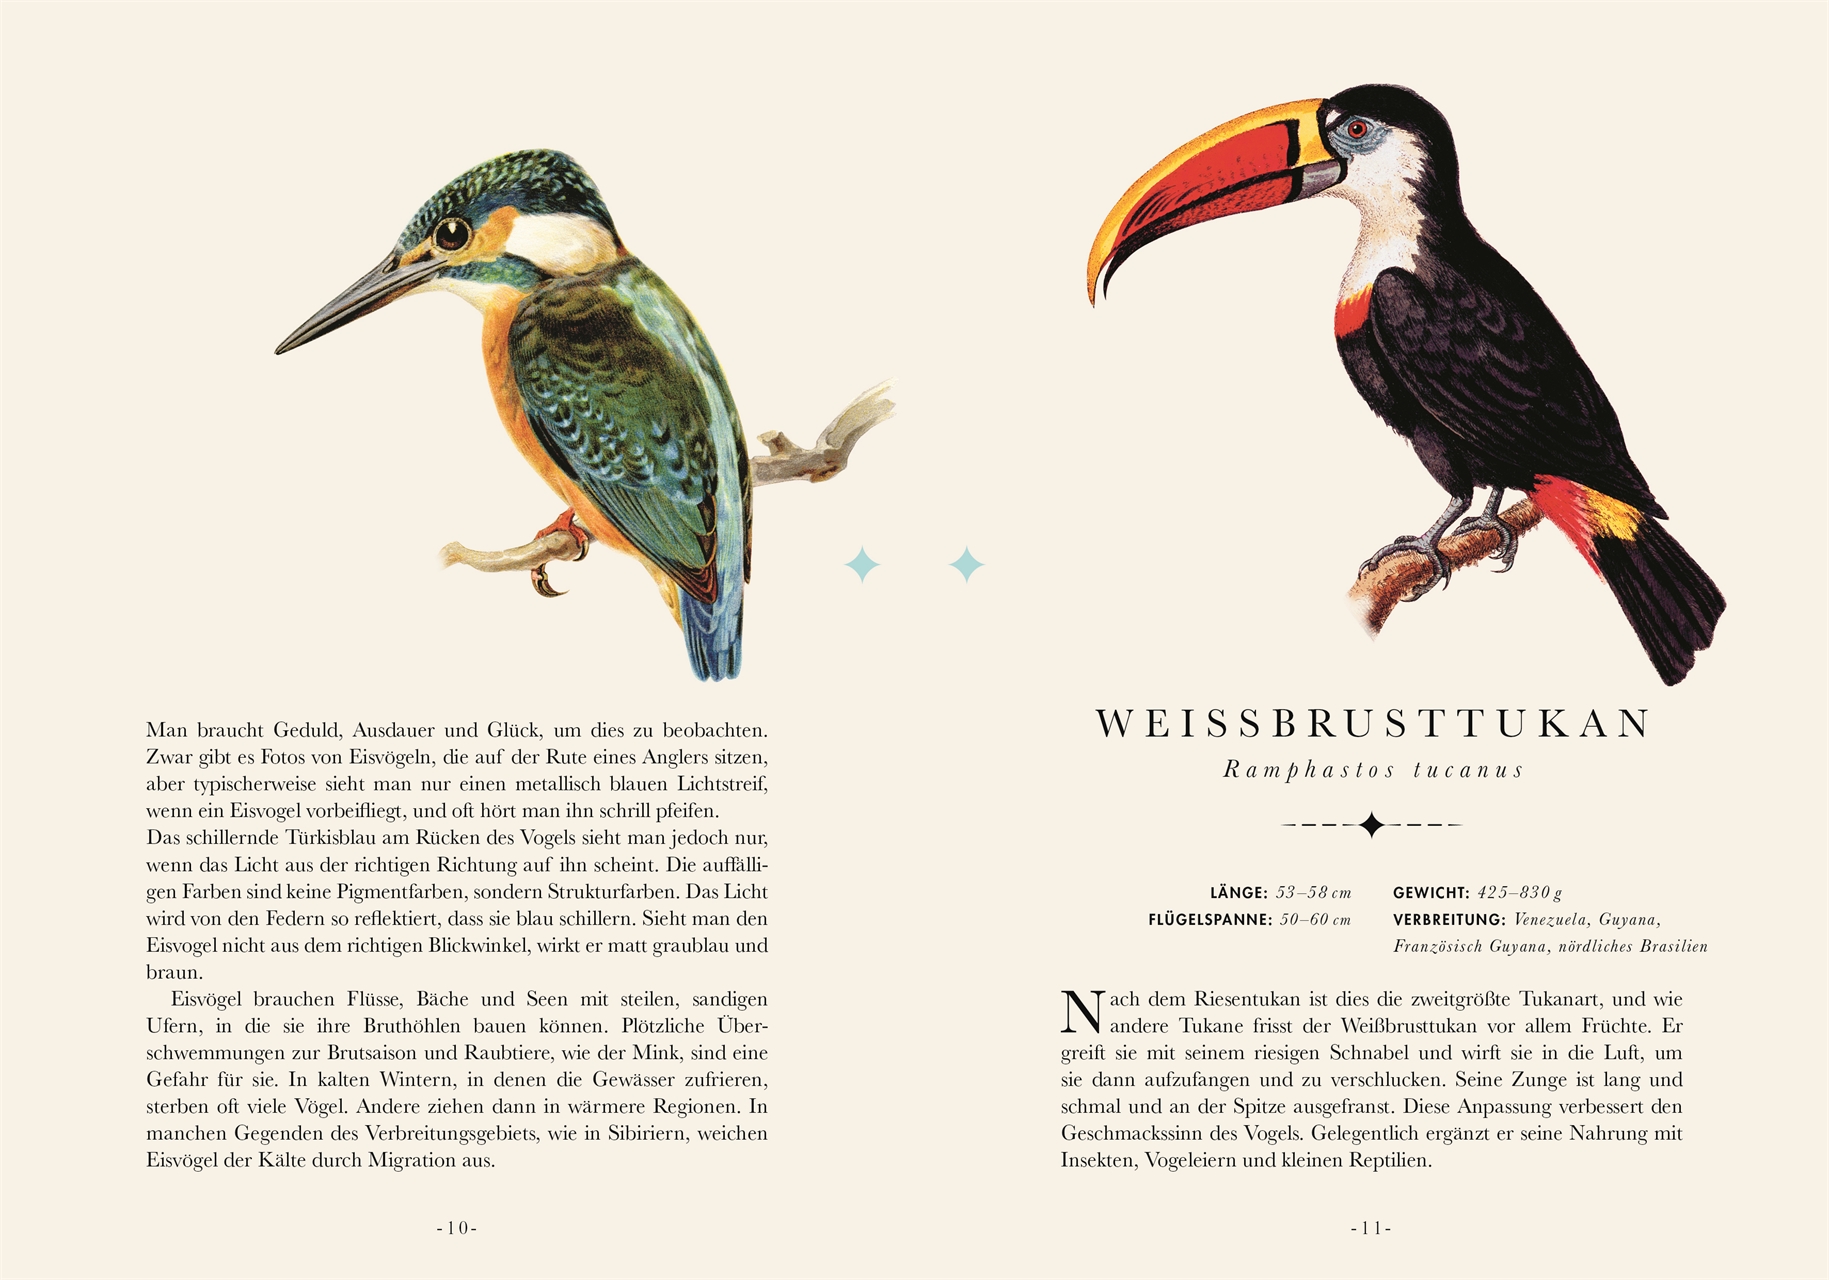 Naturelove. Die 50 schönsten Vögel der Welt